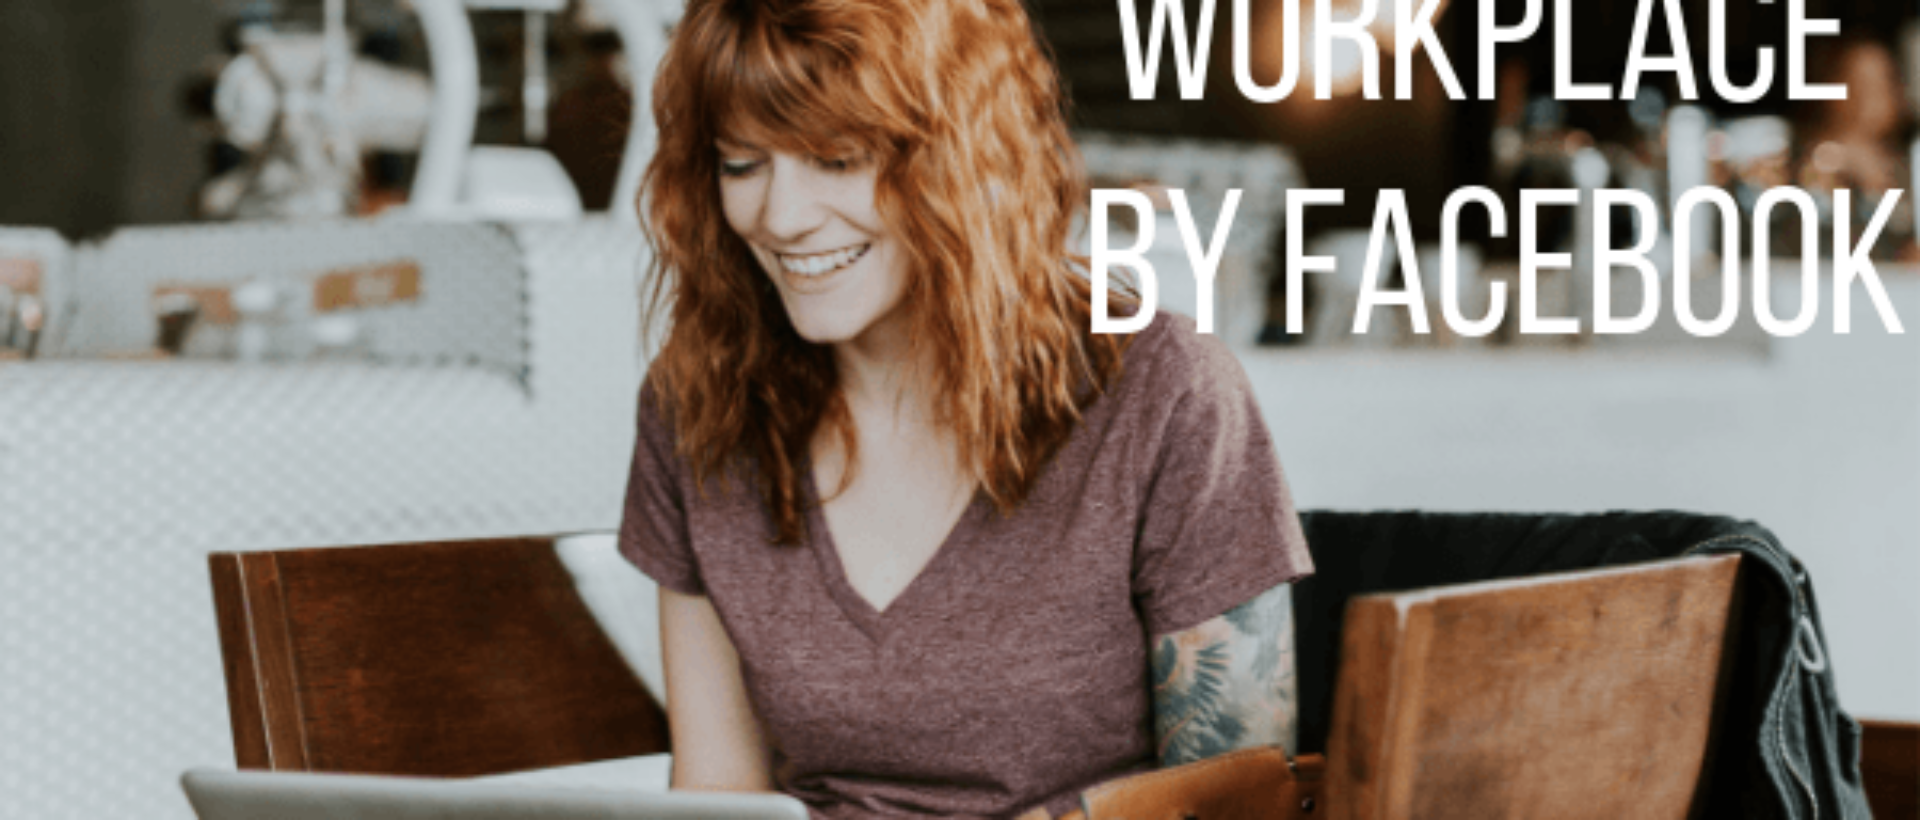 Workplace by Faceook: Der Kommunikationsknotenpunkt